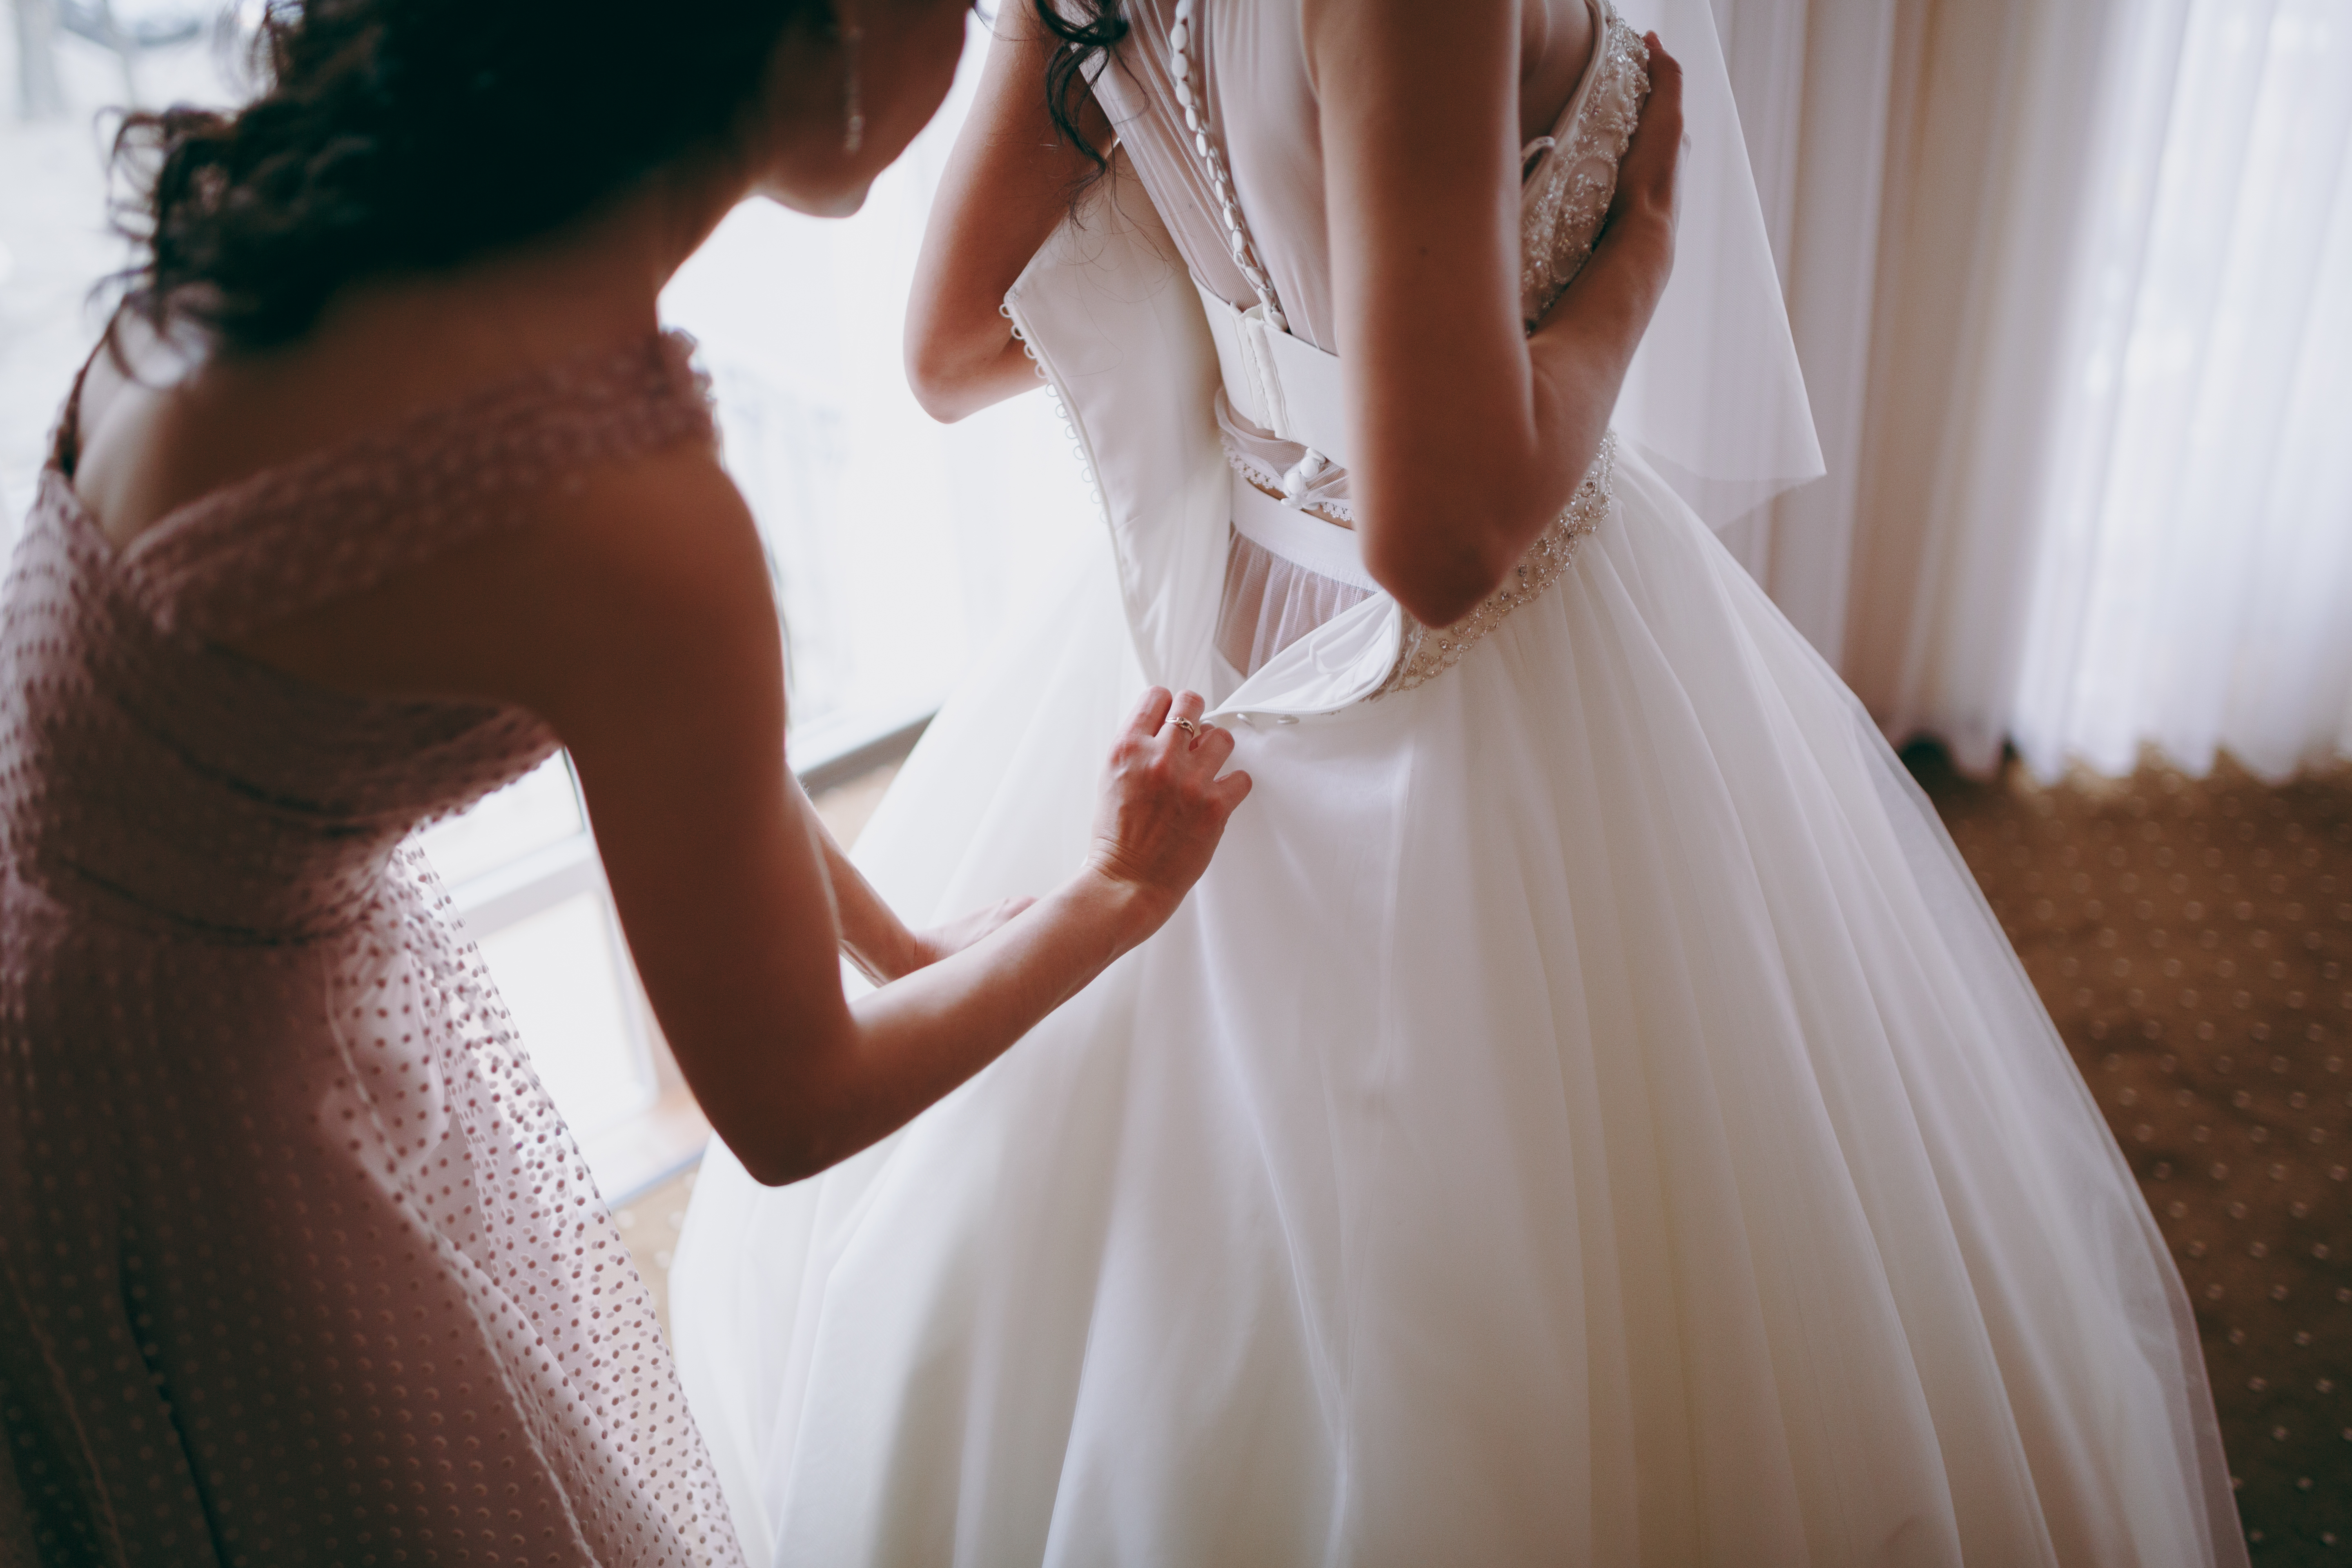 Una mujer ayuda a una novia a ponerse el vestido de novia. | Foto: Shutterstock